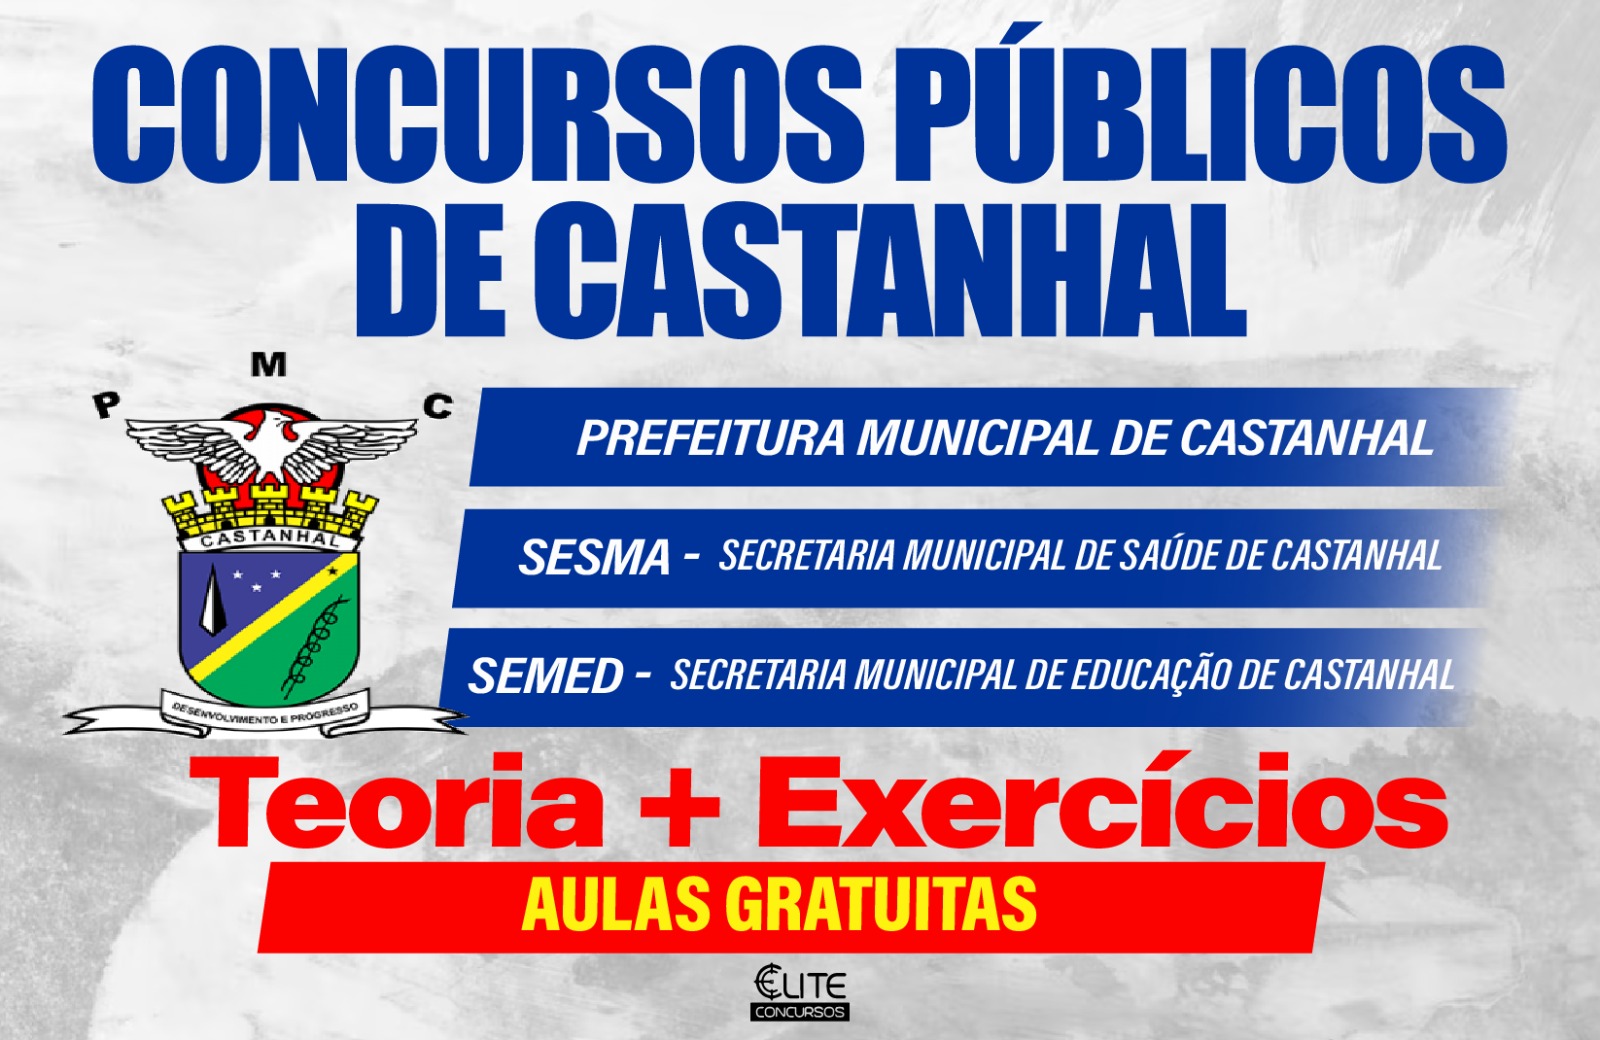 Aulo Gratuito - Prefeitura Municipal de Castanhal - 16/03